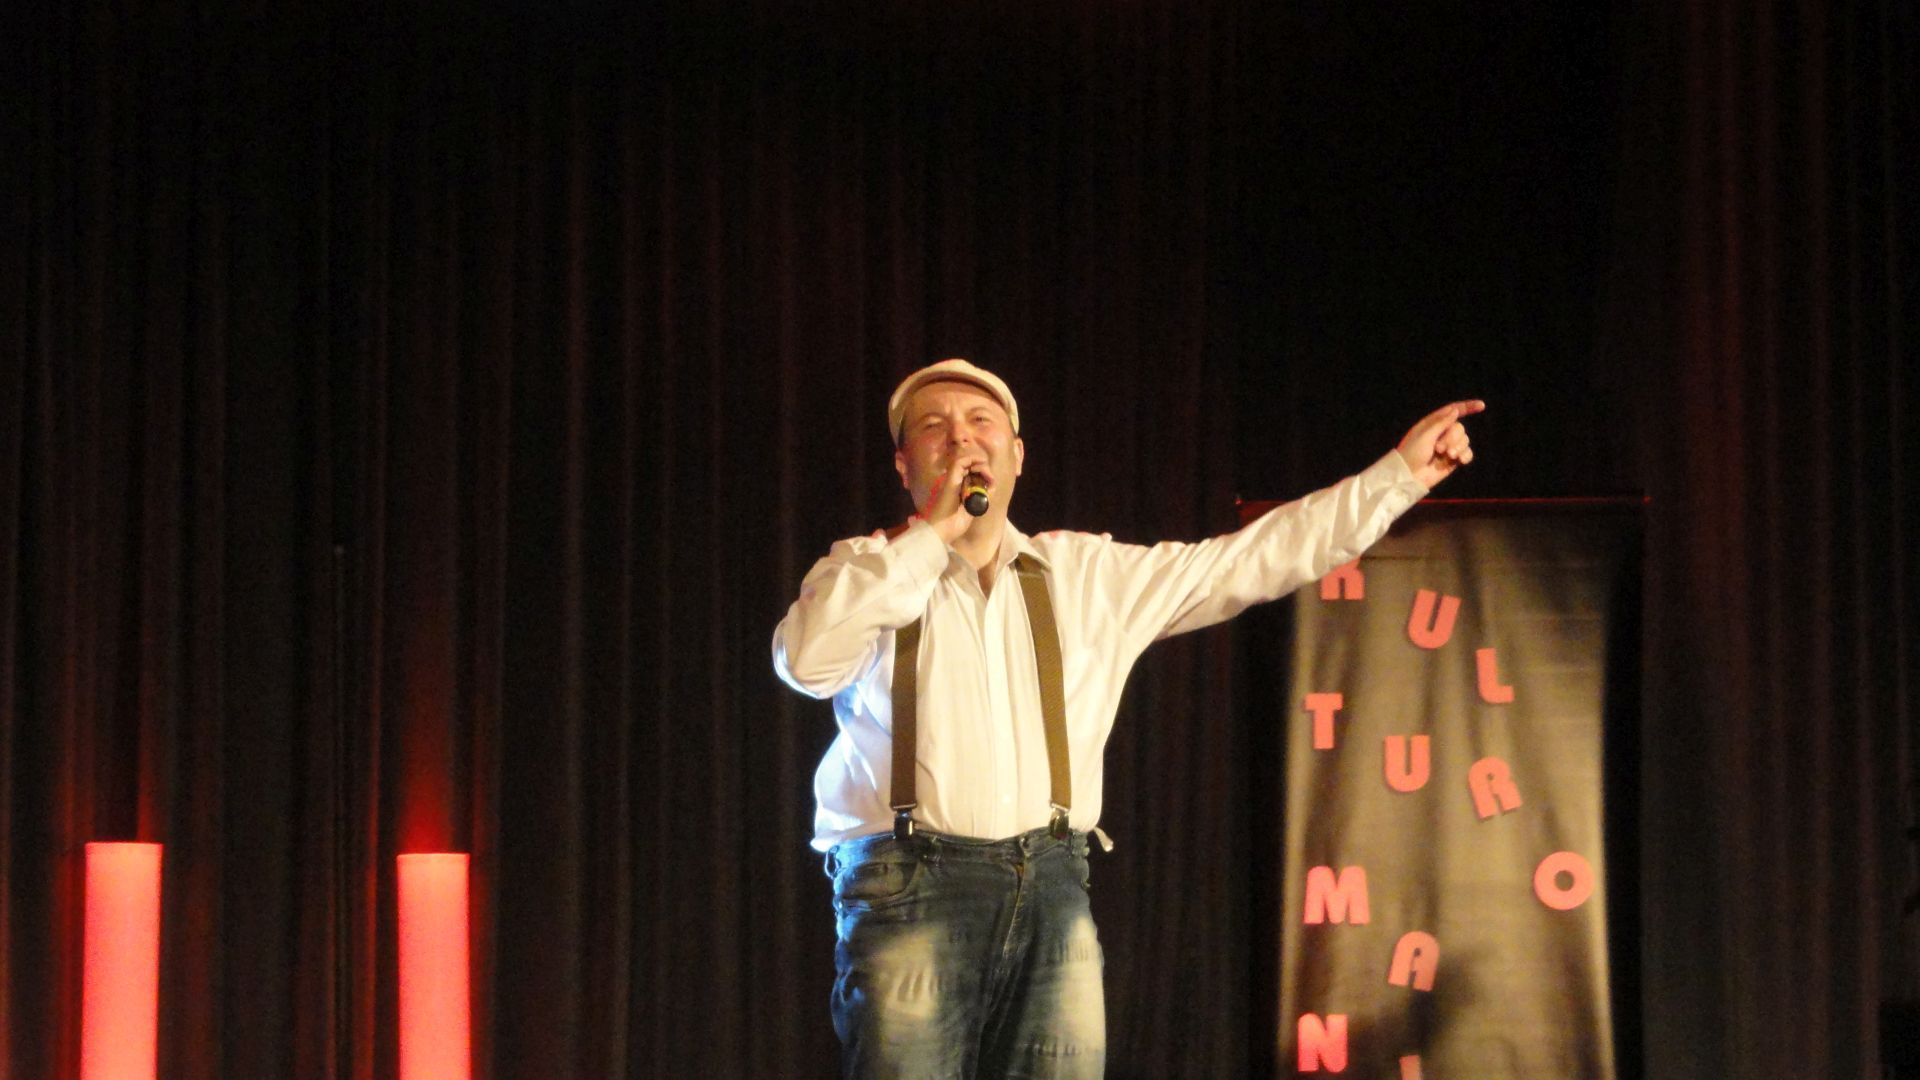 Kamil występujący na scenie podczas przeglądu twórczości artystycznej Kulturomaniak.